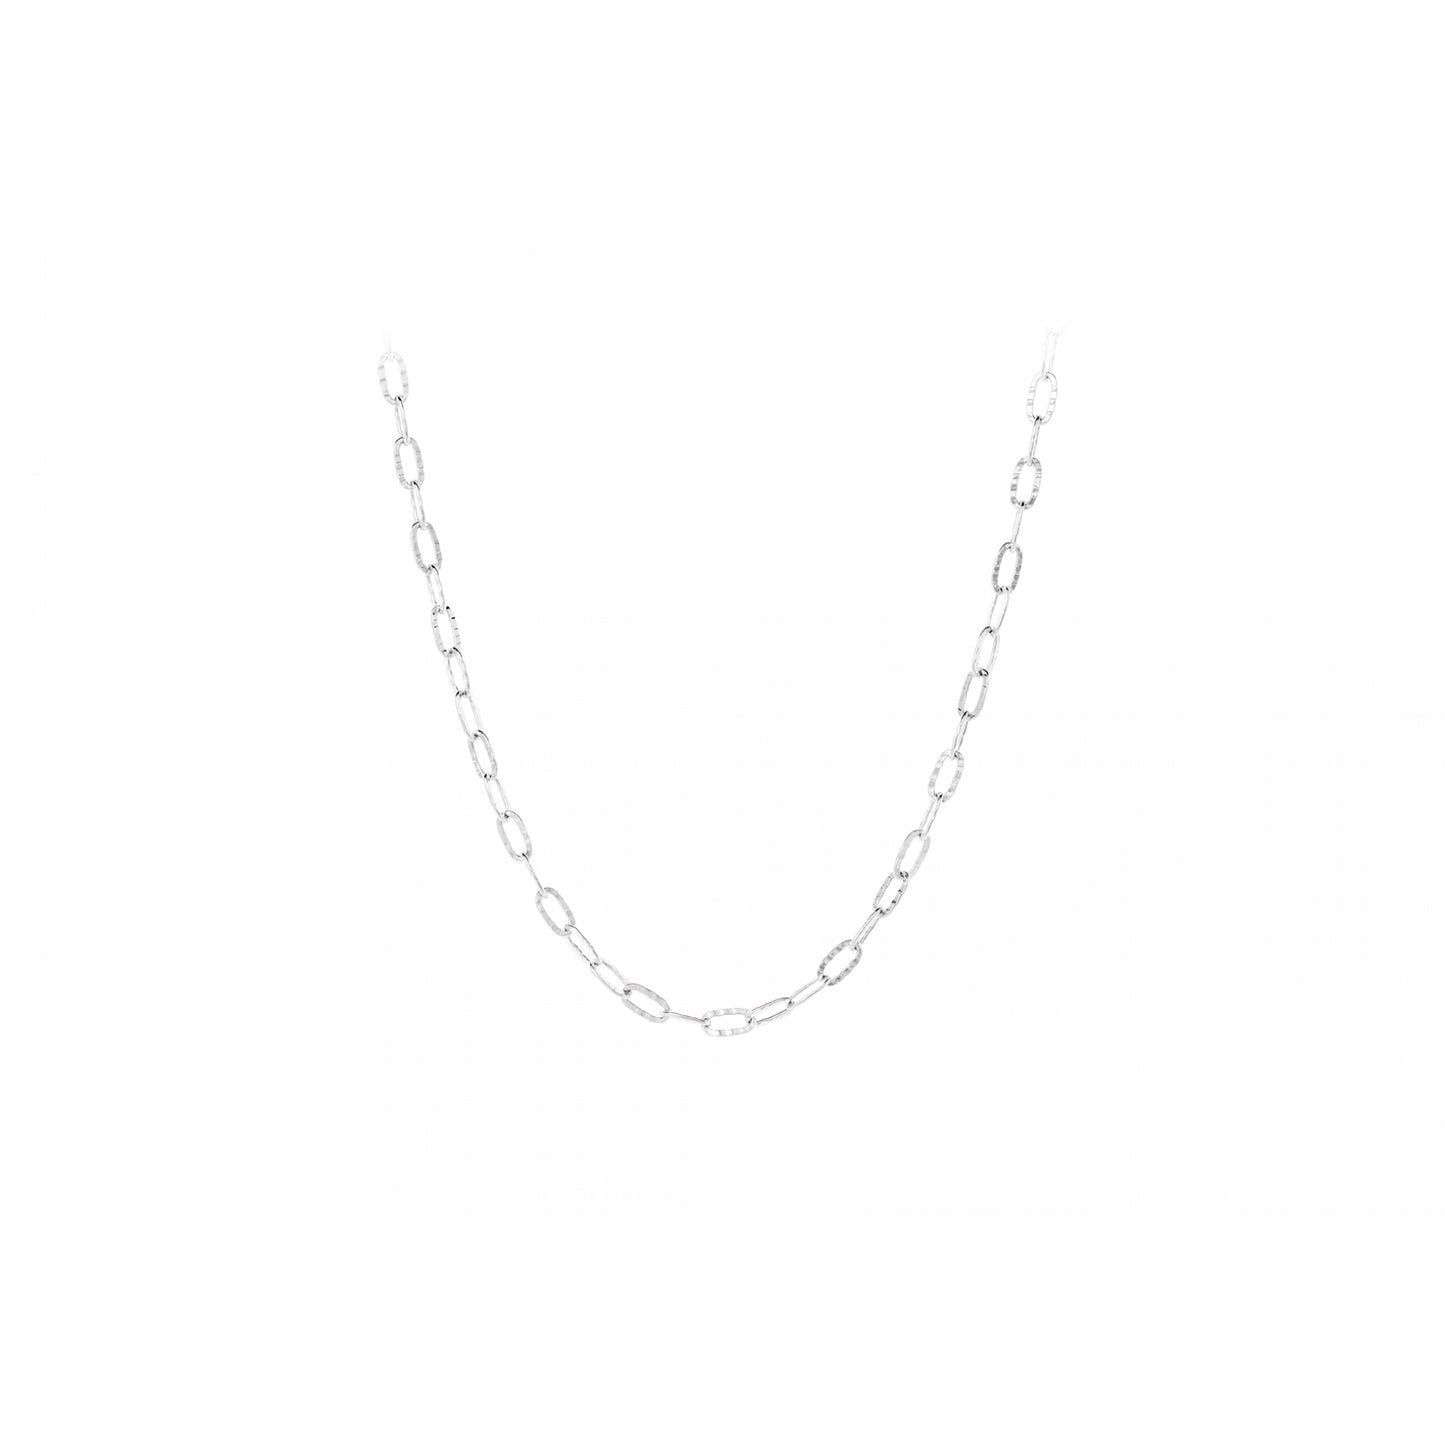 Alba necklace silver